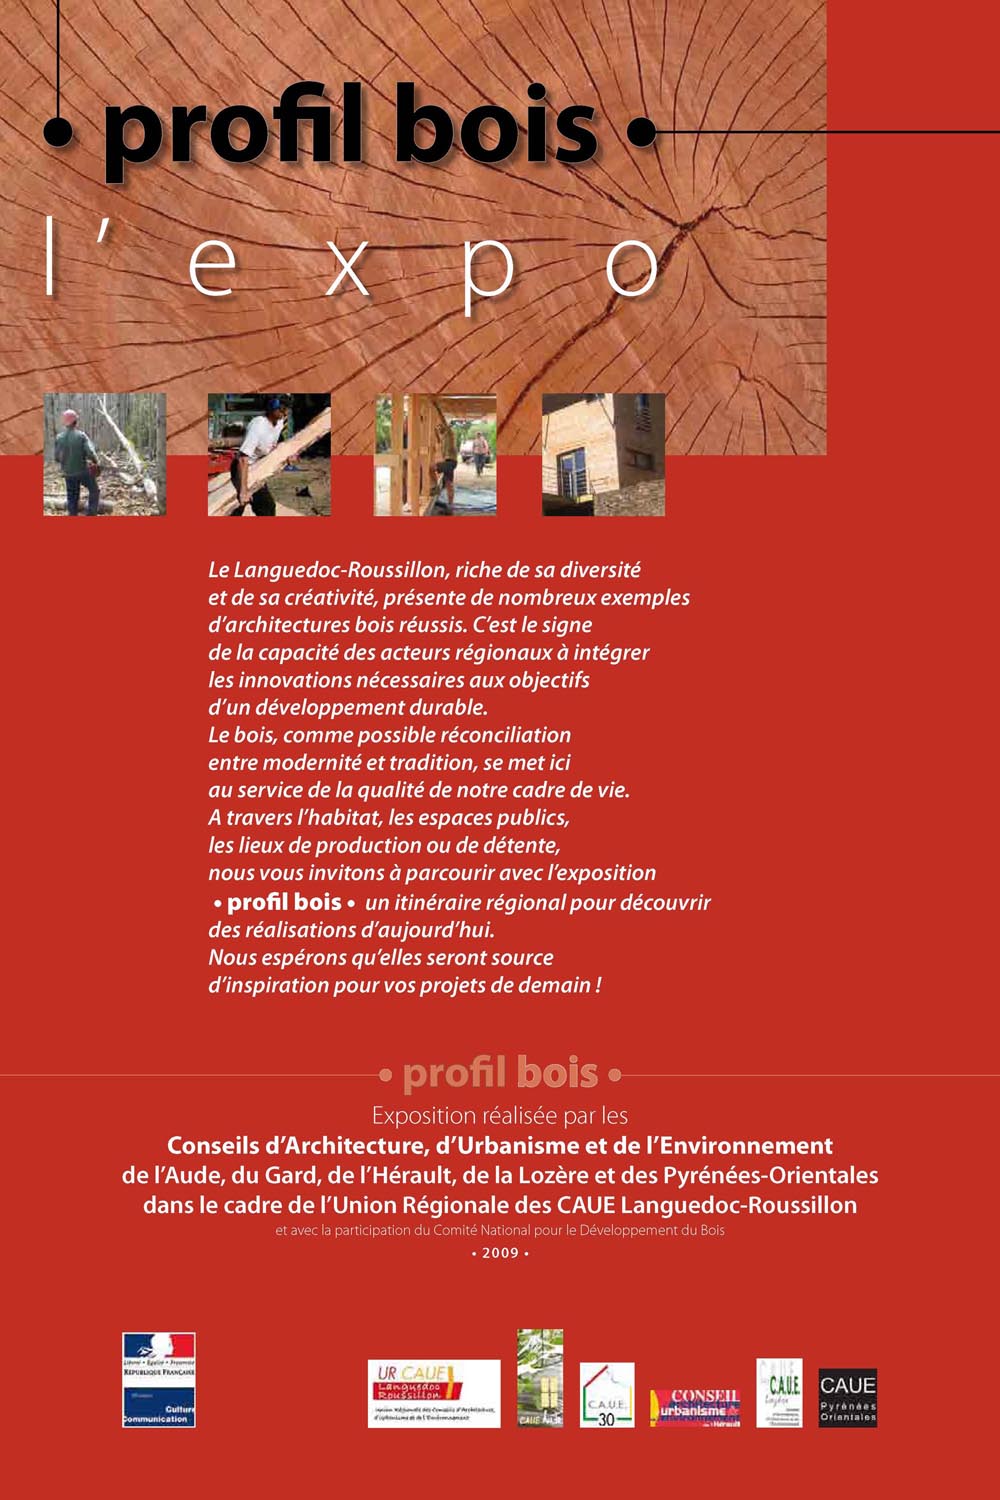 Expo profil bois PDG